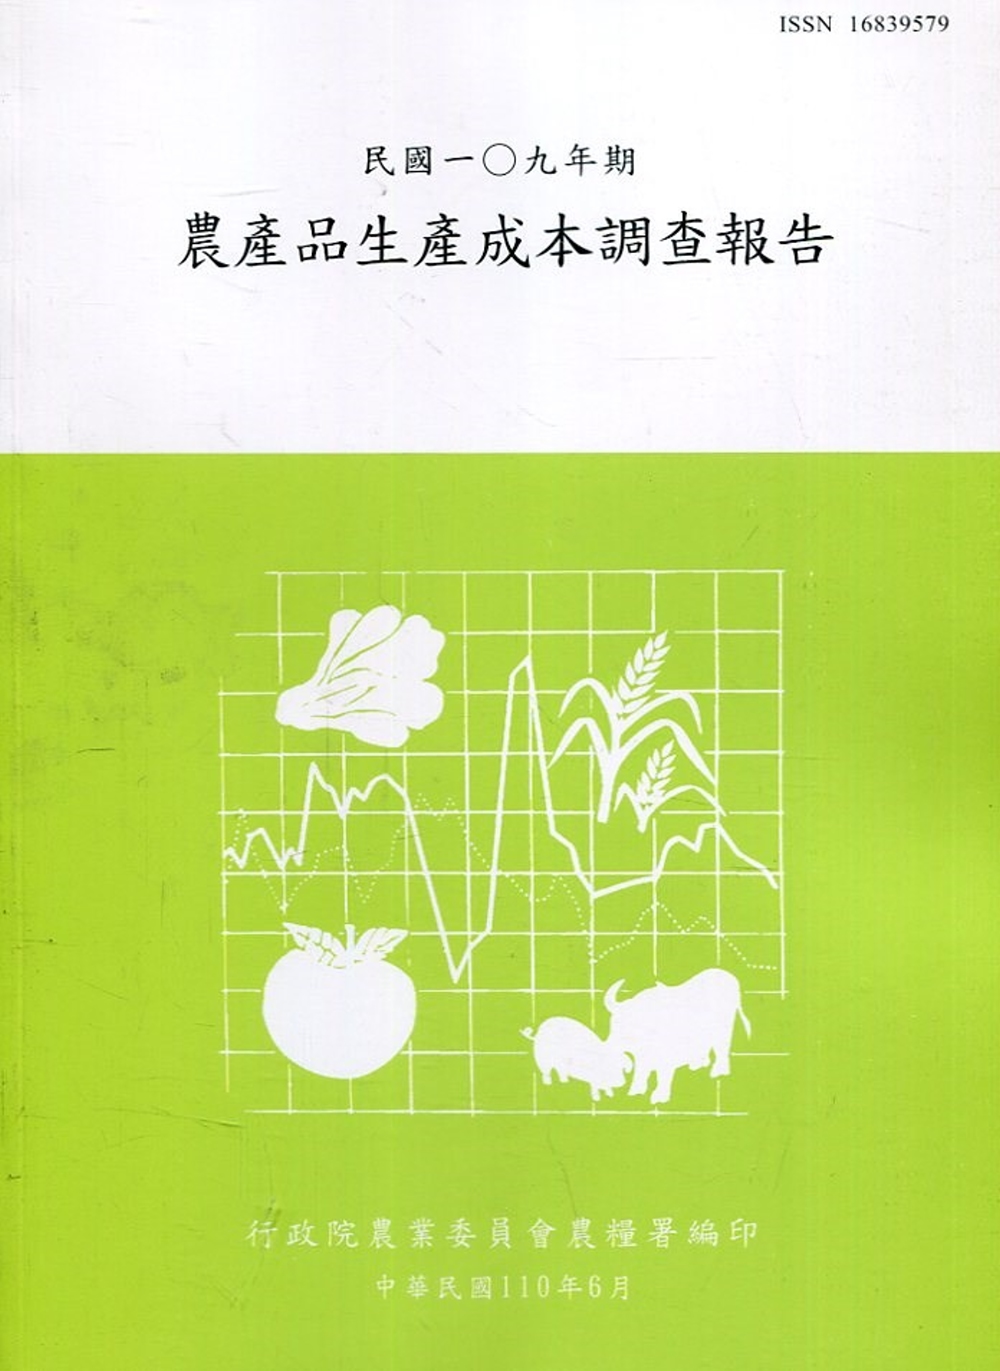 農產品生產成本調查報告109年